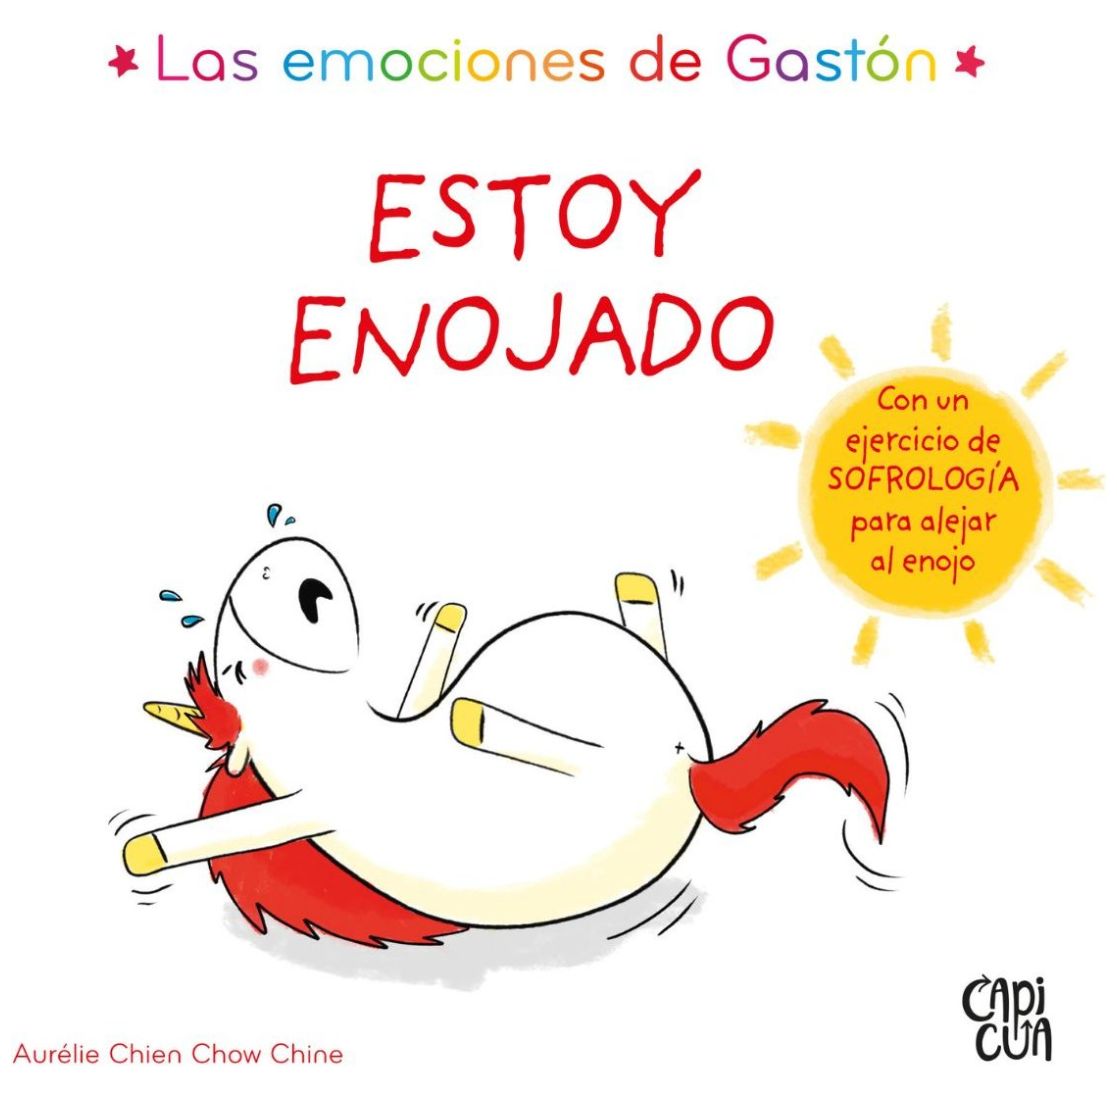 Libro de estimulación para bebé Gaston